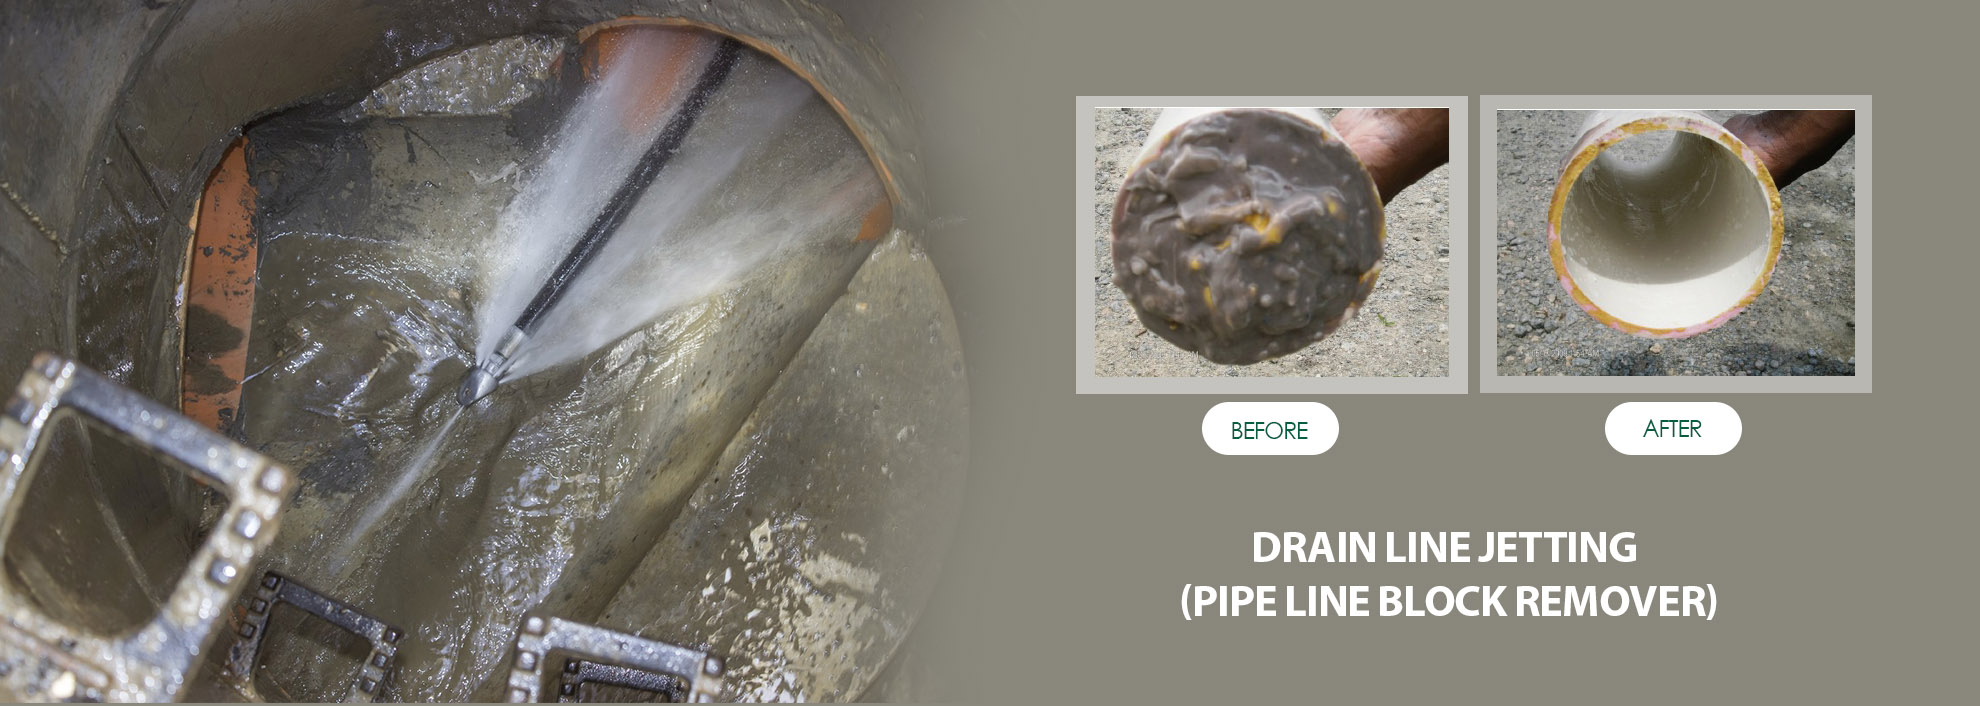 drain line jetting pipeline block remover